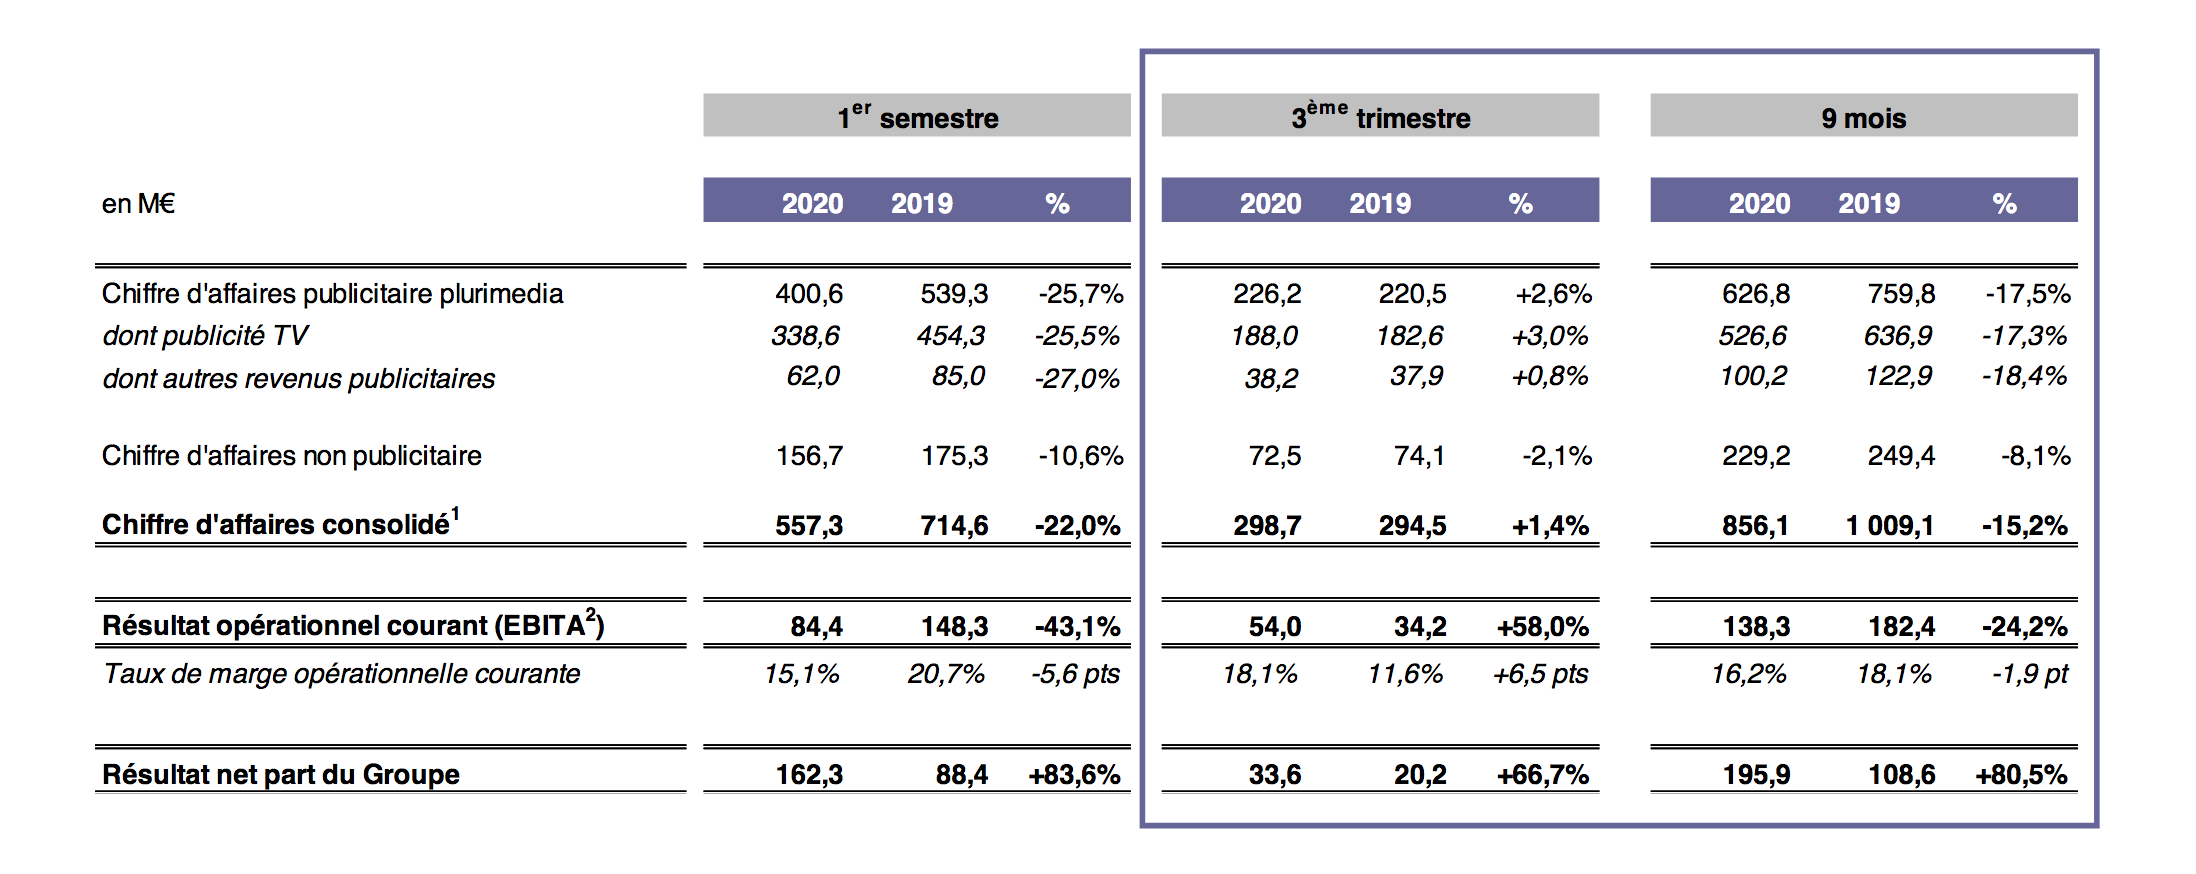 Un chiffre d’affaires publicitaire de 226.2 M€ (+2.6%) pour le Groupe M6 au 3e trimestre 2020